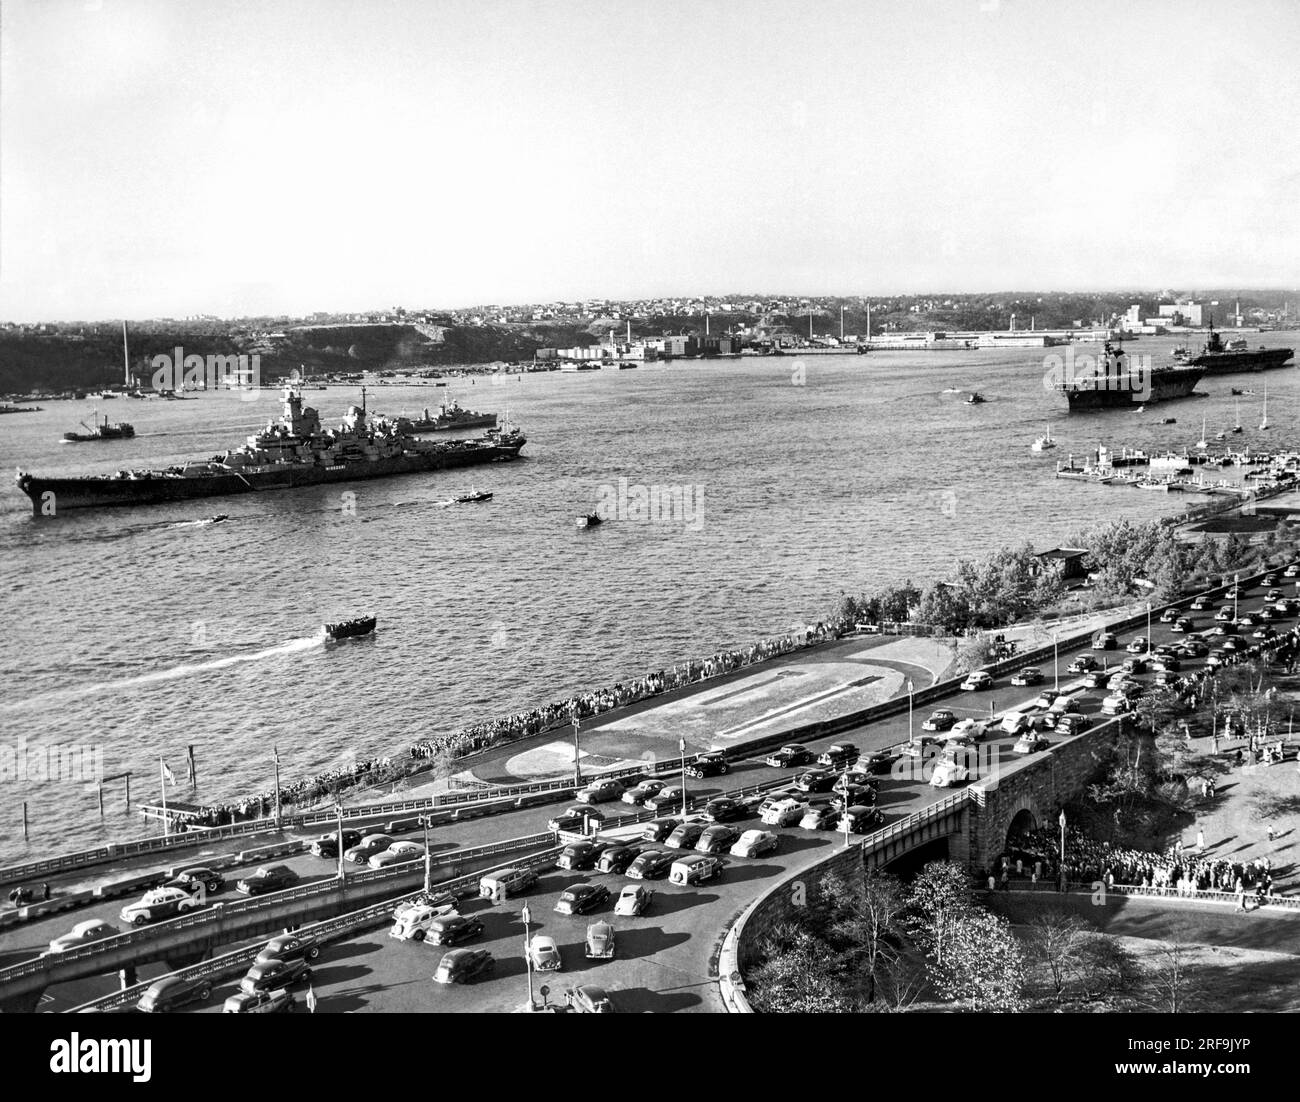 New York, New York: Ocotber 26, 1945 USA Marineschiffe vor Anker im Hudson River in Vorbereitung auf den Navy Day in New York. Das Schlachtschiff Missouri führt auf der linken Seite, und die Flugzeugträger Enteprise und Midway folgen dahinter. Stockfoto